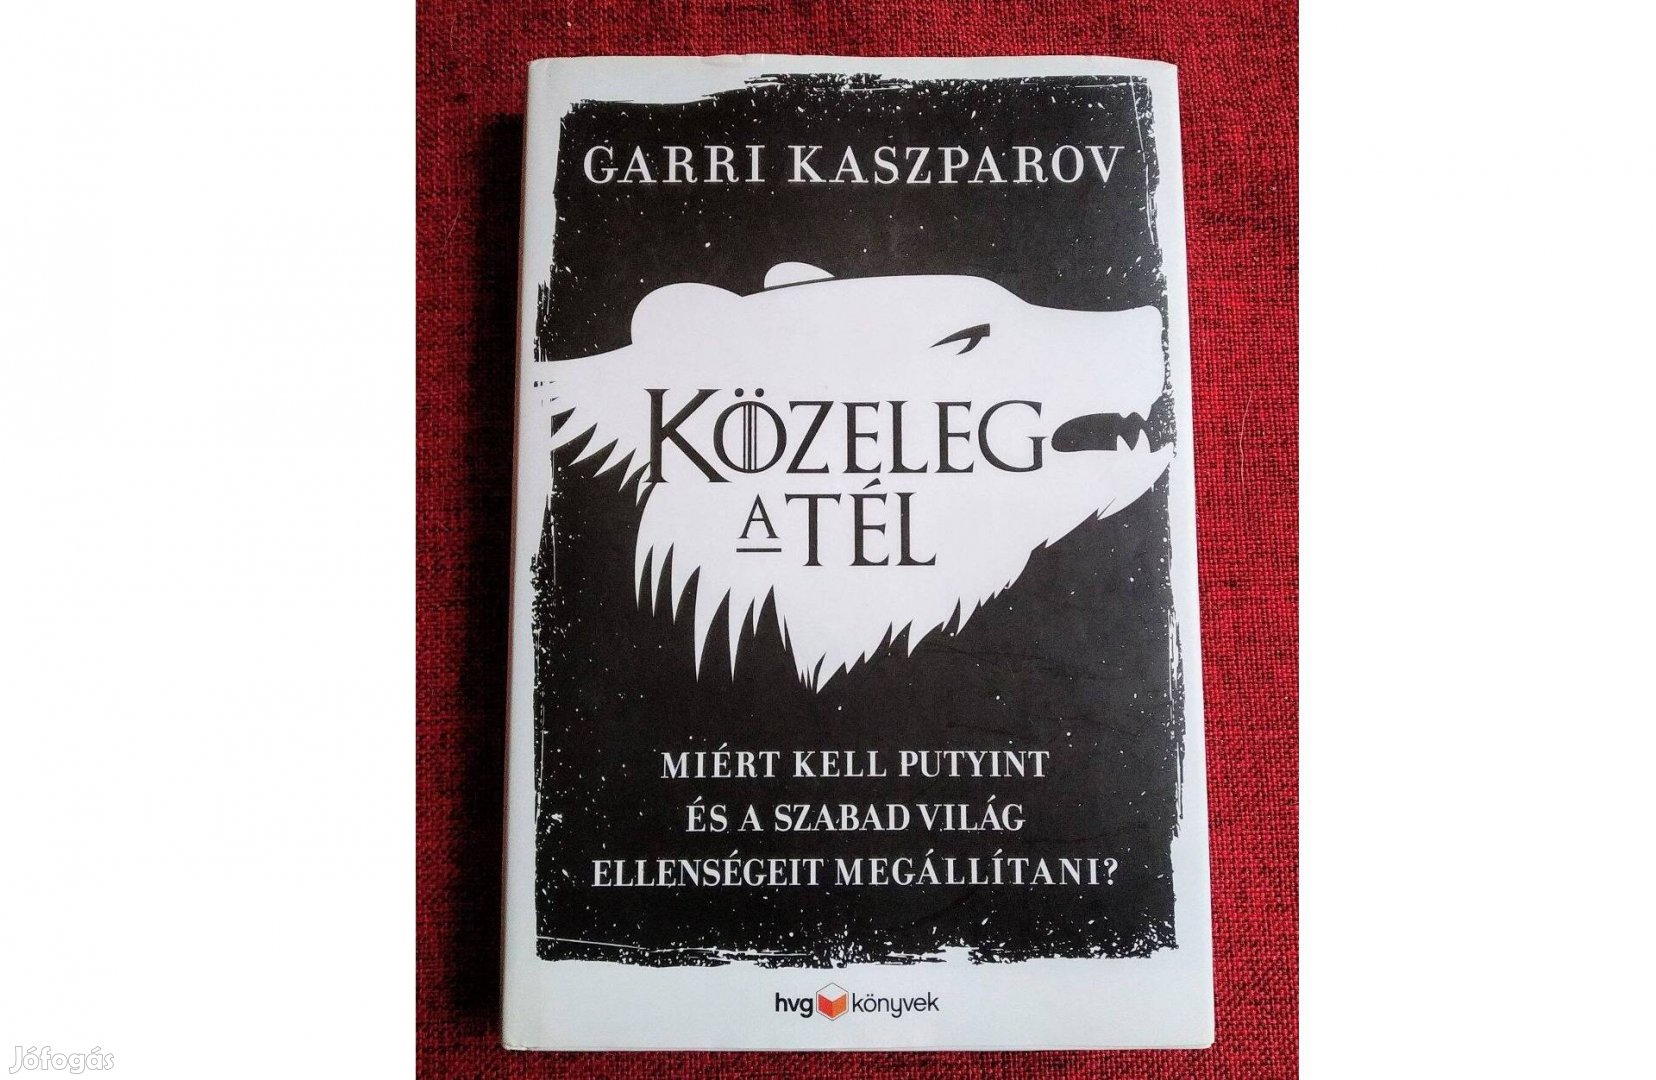 Közeleg a tél Garri Kaszparov újszerű